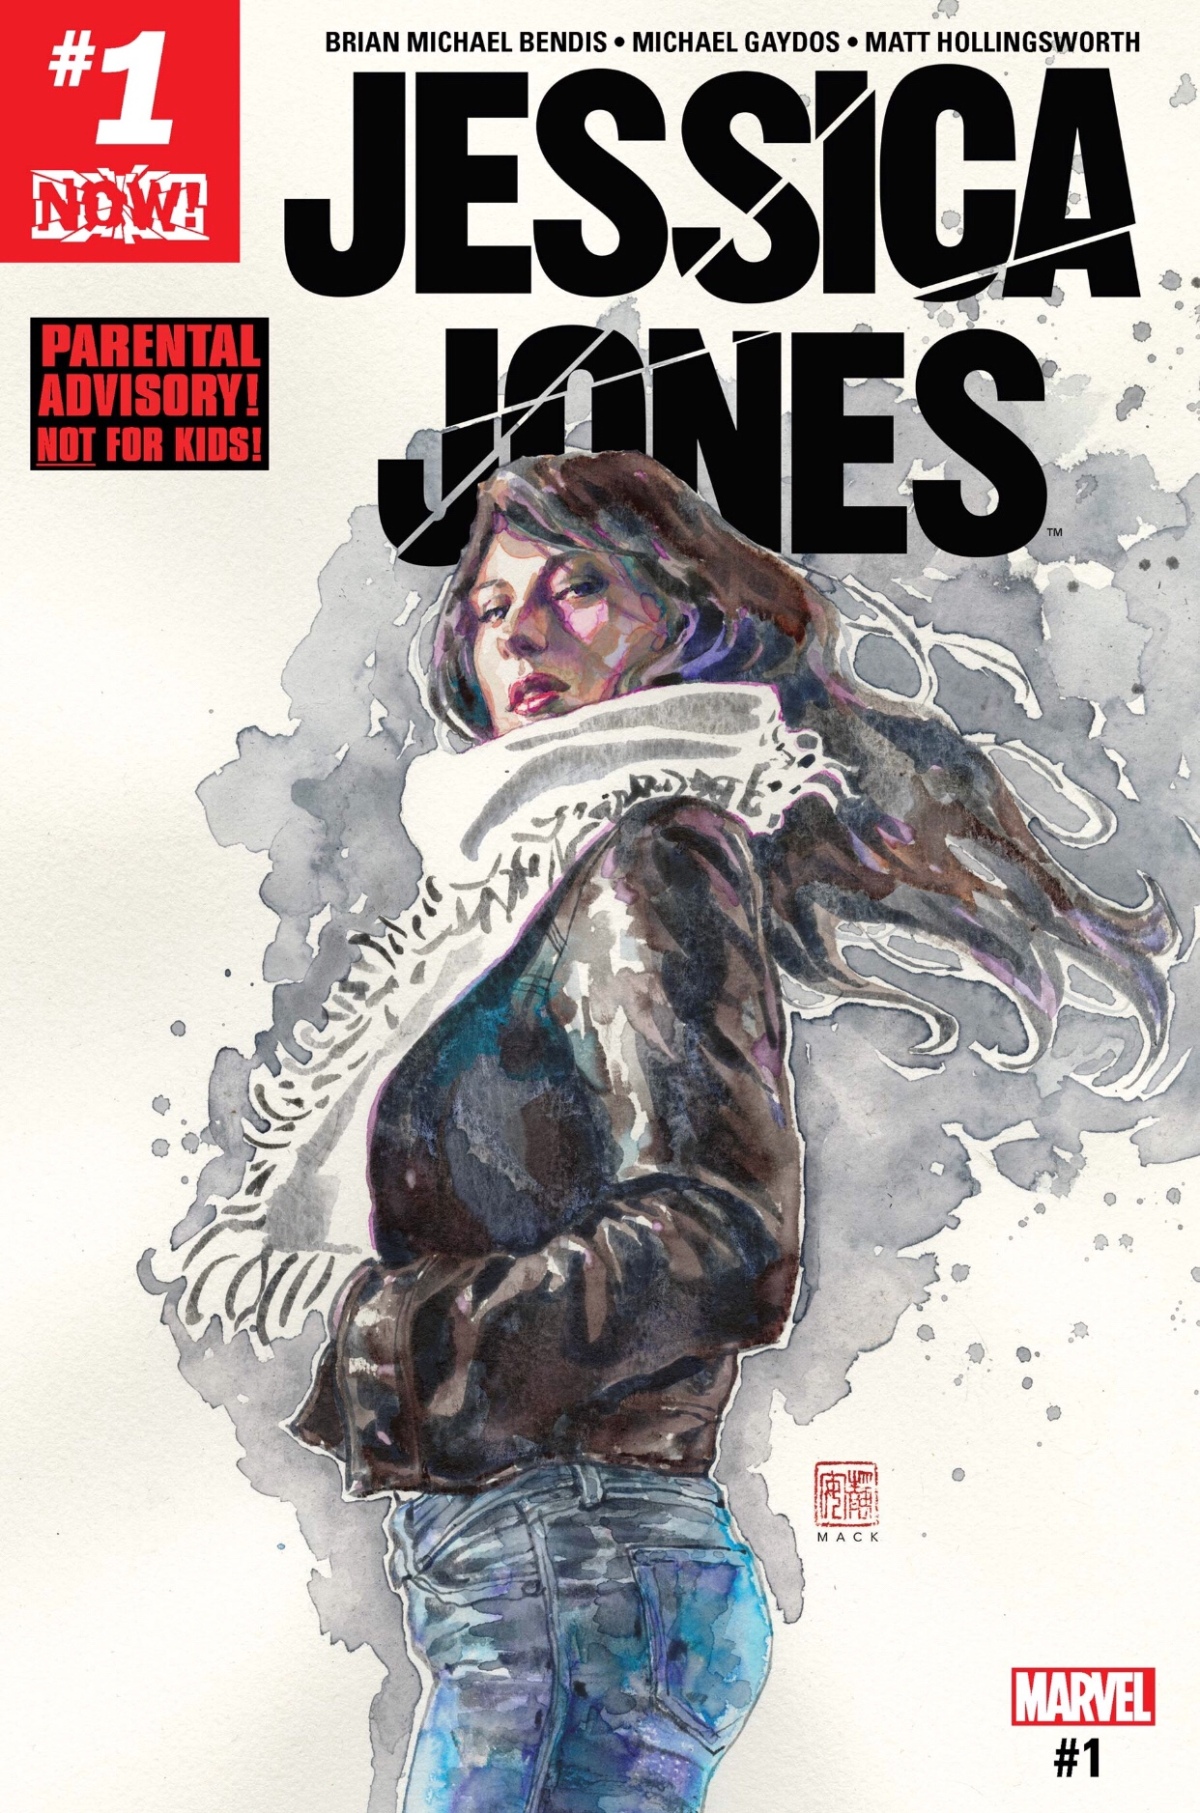 Jessica Jones vs. Misty Knight (Jessica Jones #1)